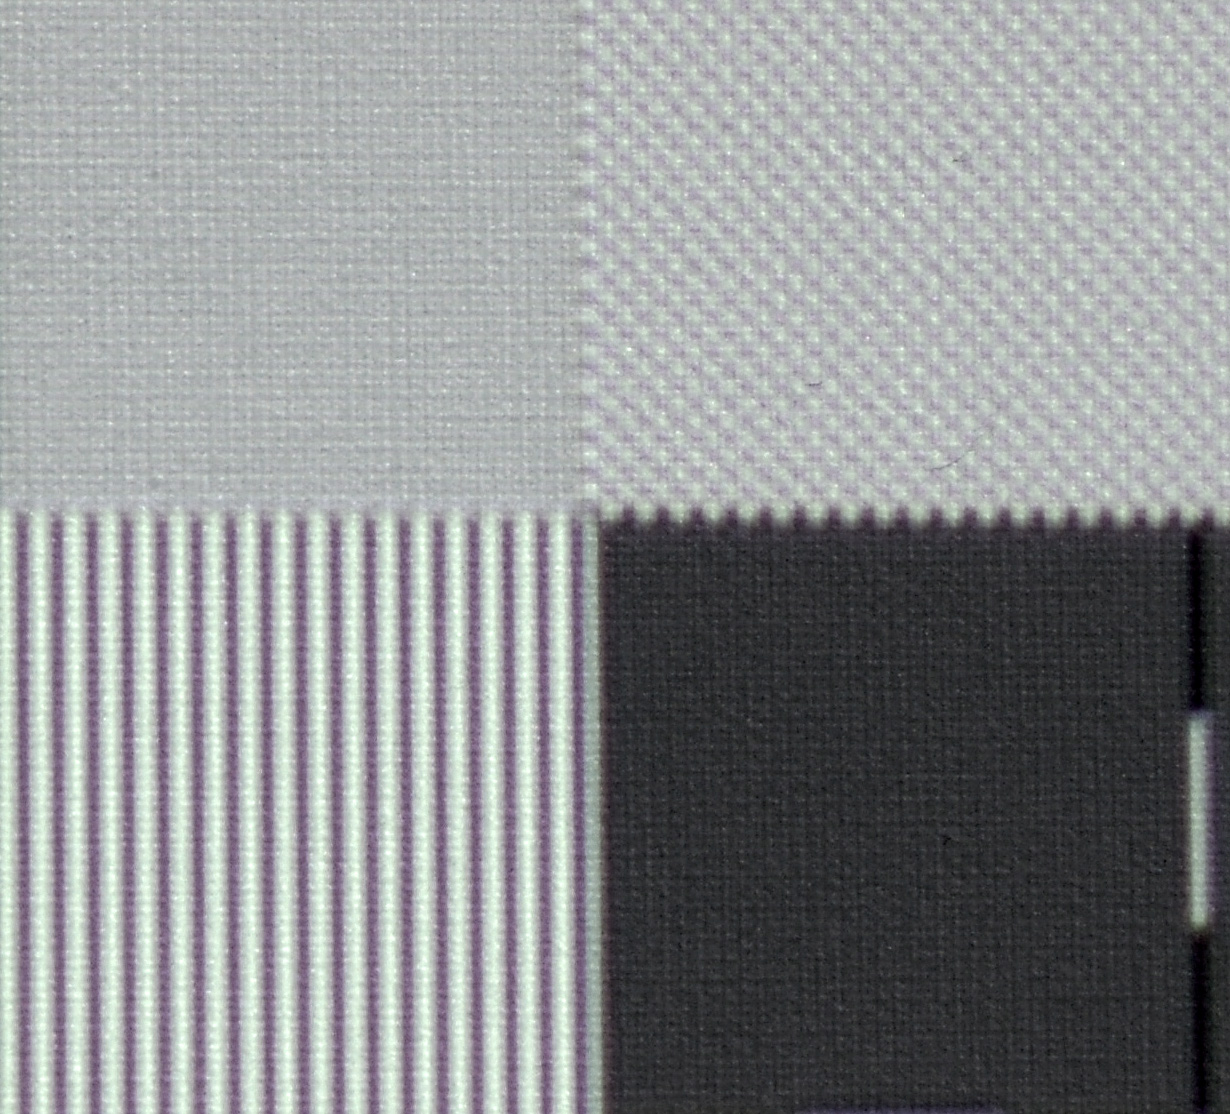 UHD-Pixelauflösung: Um die Arbeitsweise der XPR-Technologie nachzuvollziehen, habe ich ein Testbild u. a. mit Schachbrettmuster in UHD-Pixelauflösung (oben links) zugespielt. In der Makroaufnahme fällt sofort auf, dass es praktisch keine einzelnen Felder mehr gibt, sondern die ganze Fläche grau verfärbt erscheint. Dies lässt darauf schließen, dass sich schwarze und weiße Felder überlagern, so dass die „Mischfarbe“ Grau entsteht. Das kenne ich auch so von anderen Projektoren mit eShift-Technologie und Full-HD-Auflösung (Epson EH-TW9300 und JVC DLA-X5900). Rechts neben dem UHD-Schachbrettmuster befindet sich ein Schachbrett mit Full-HD-Auflösung. Hier werden hingegen alle Pixel vollständig dargestellt, wenn auch mit reduziertem Kontrast.